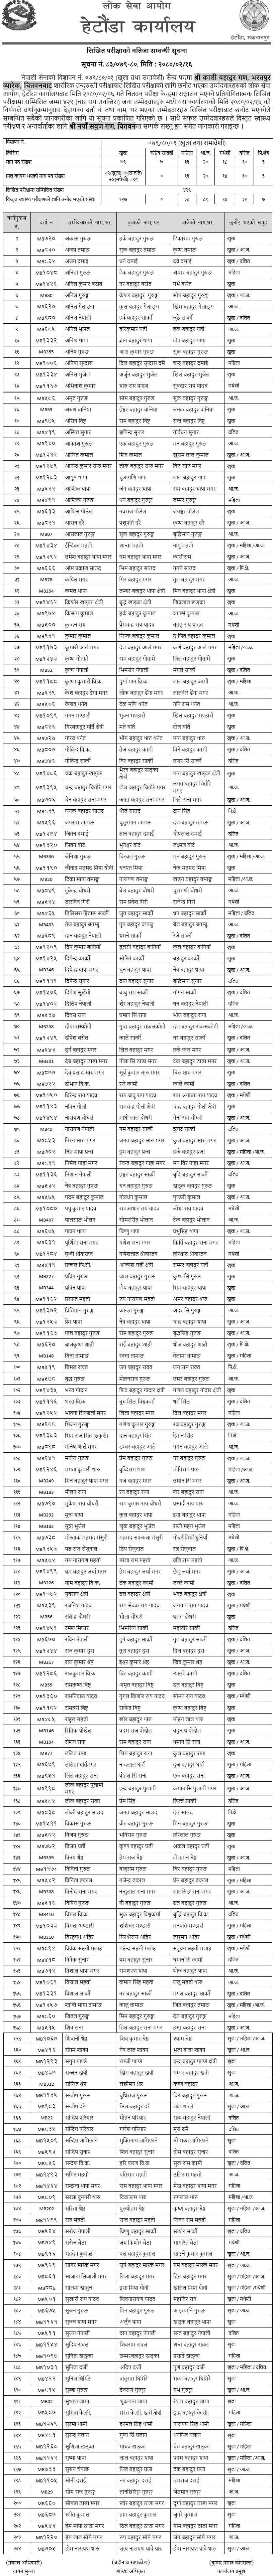 Nepal Army Sainya Written Exam Result 2080 (Chitwan)